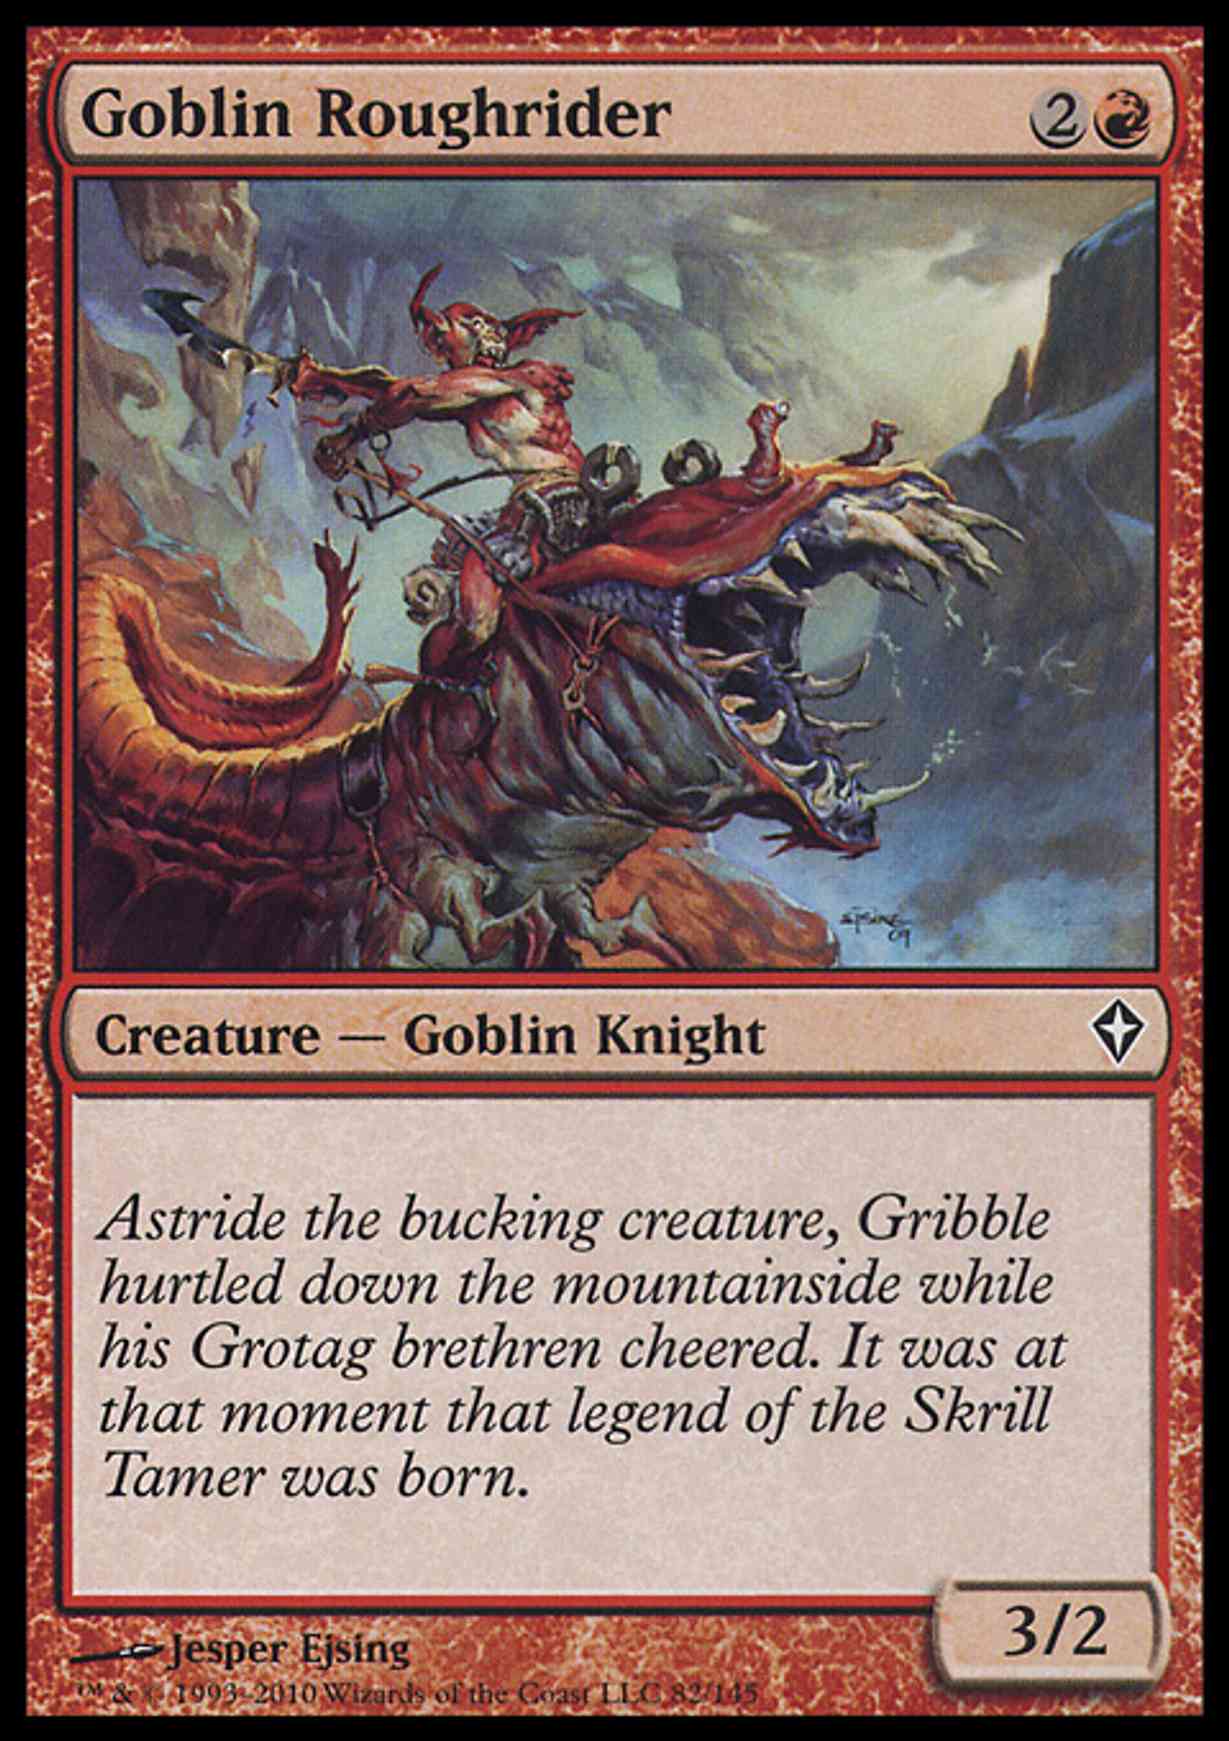 Goblin Roughrider magic card front